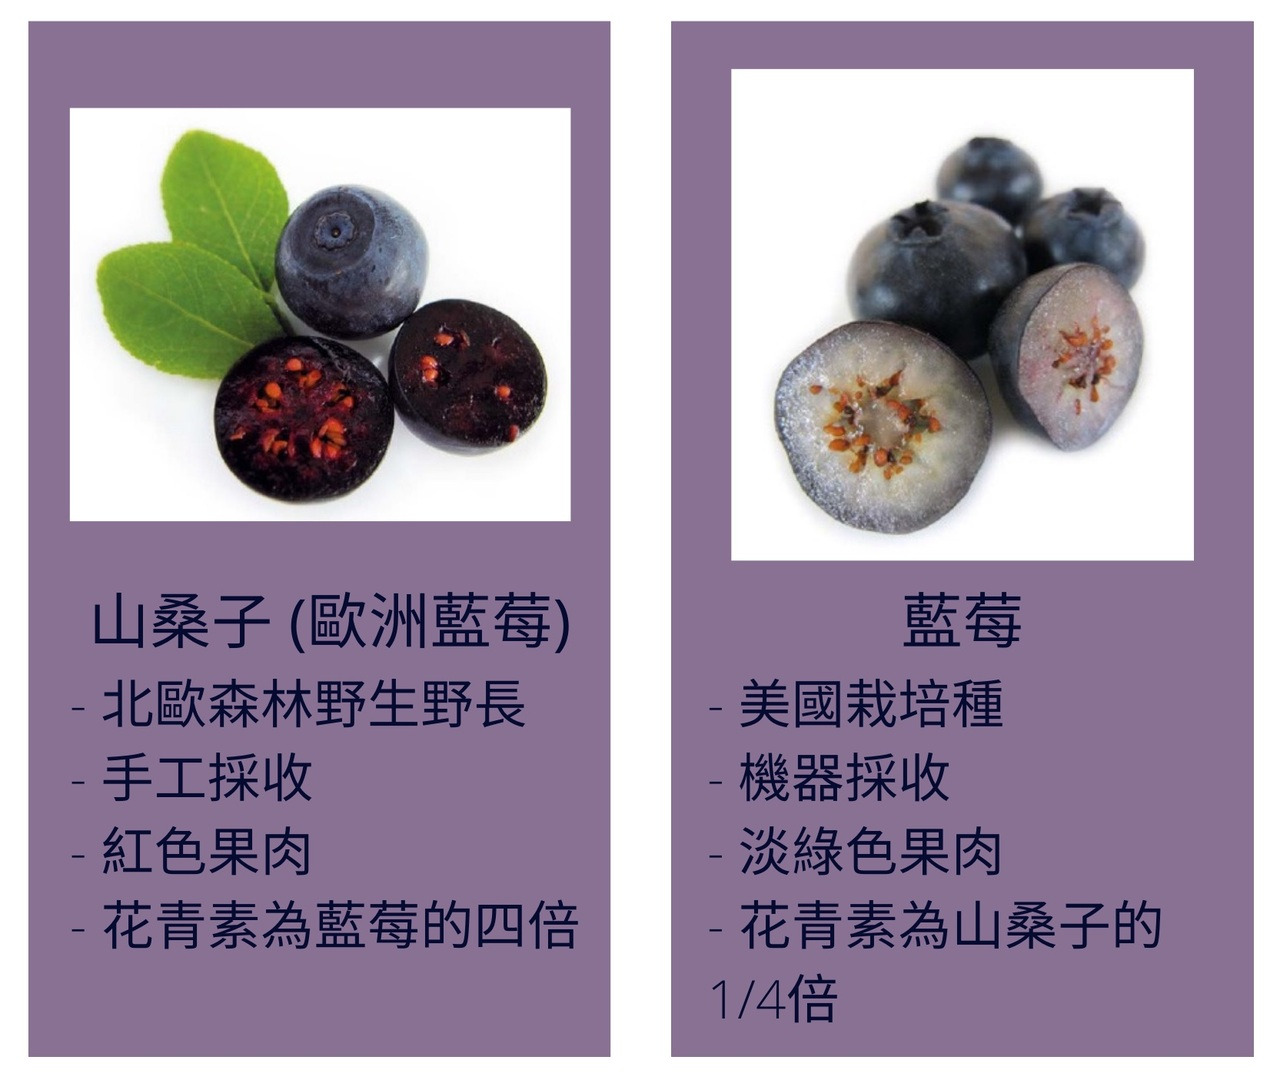 山桑子(歐洲藍莓)vs.藍莓